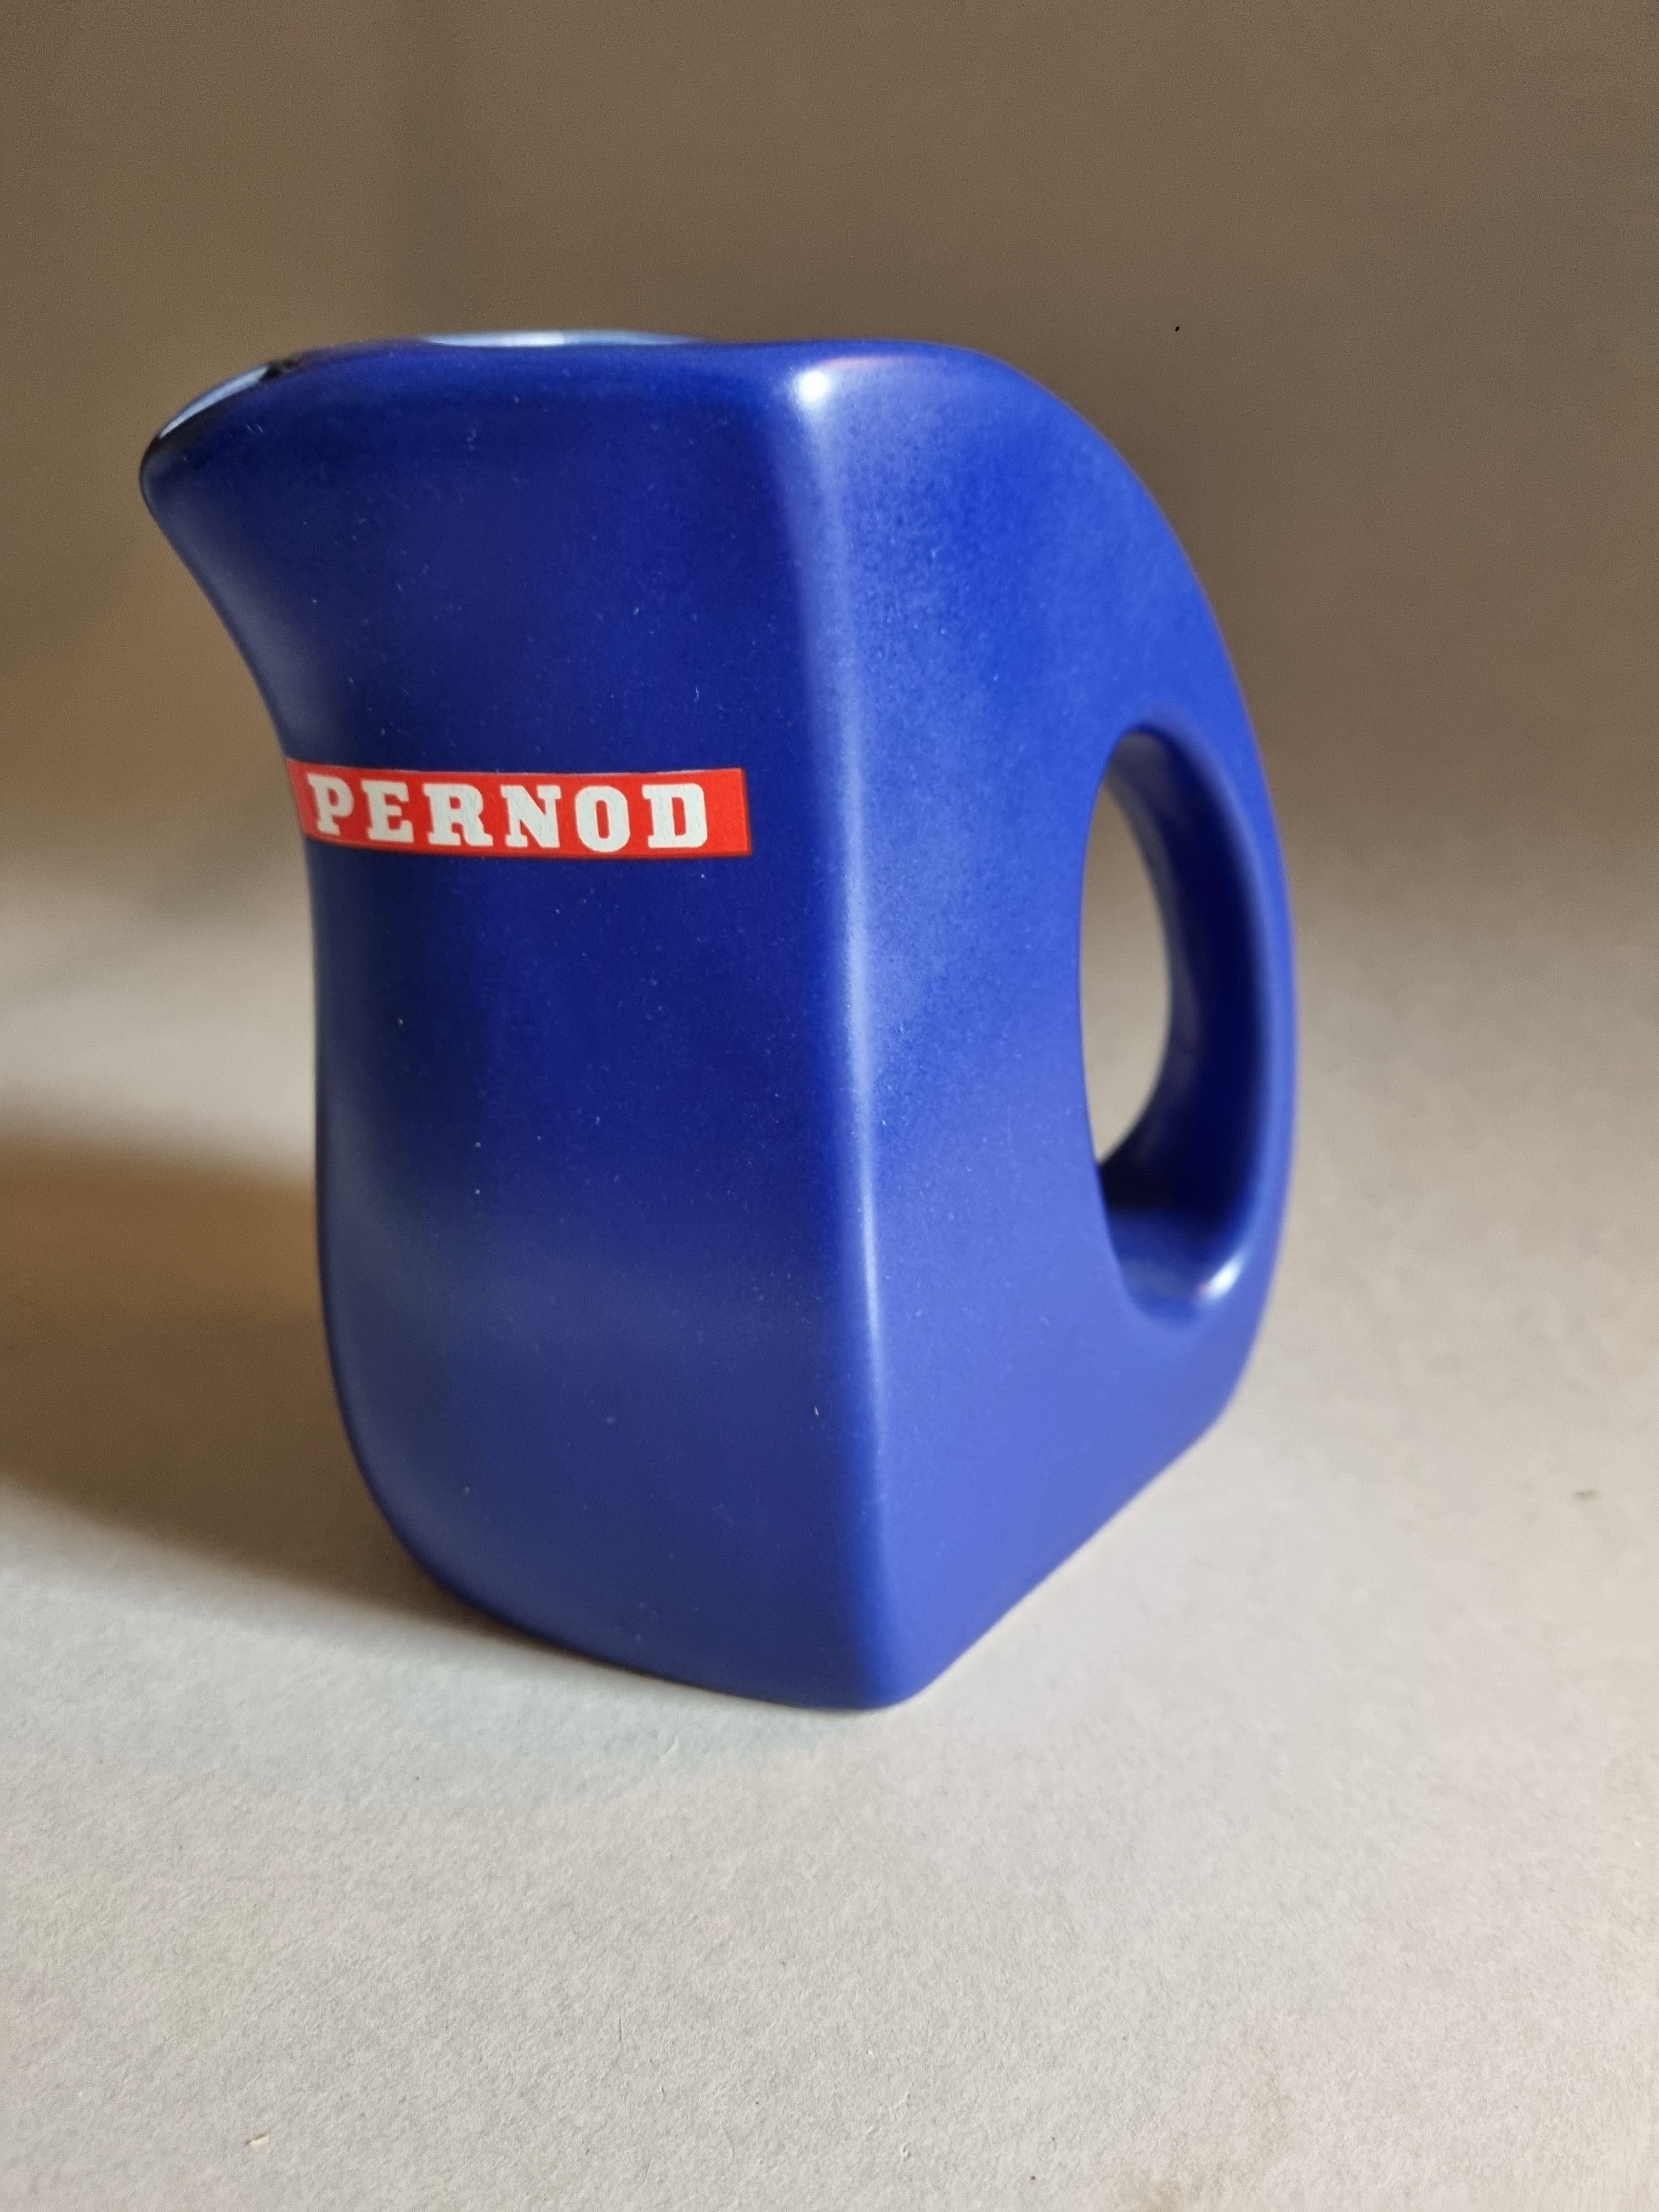 Dieser gebrauchte Wasserkrug mit einer Fassungsvermögen von 1/2 L ist ein Sammlerstück für alle Fans von Pernod. Der blaue Krug ist besonders selten und eignet sich nicht nur zum Gebrauch, sondern auch perfekt als Dekorationsobjekt.

